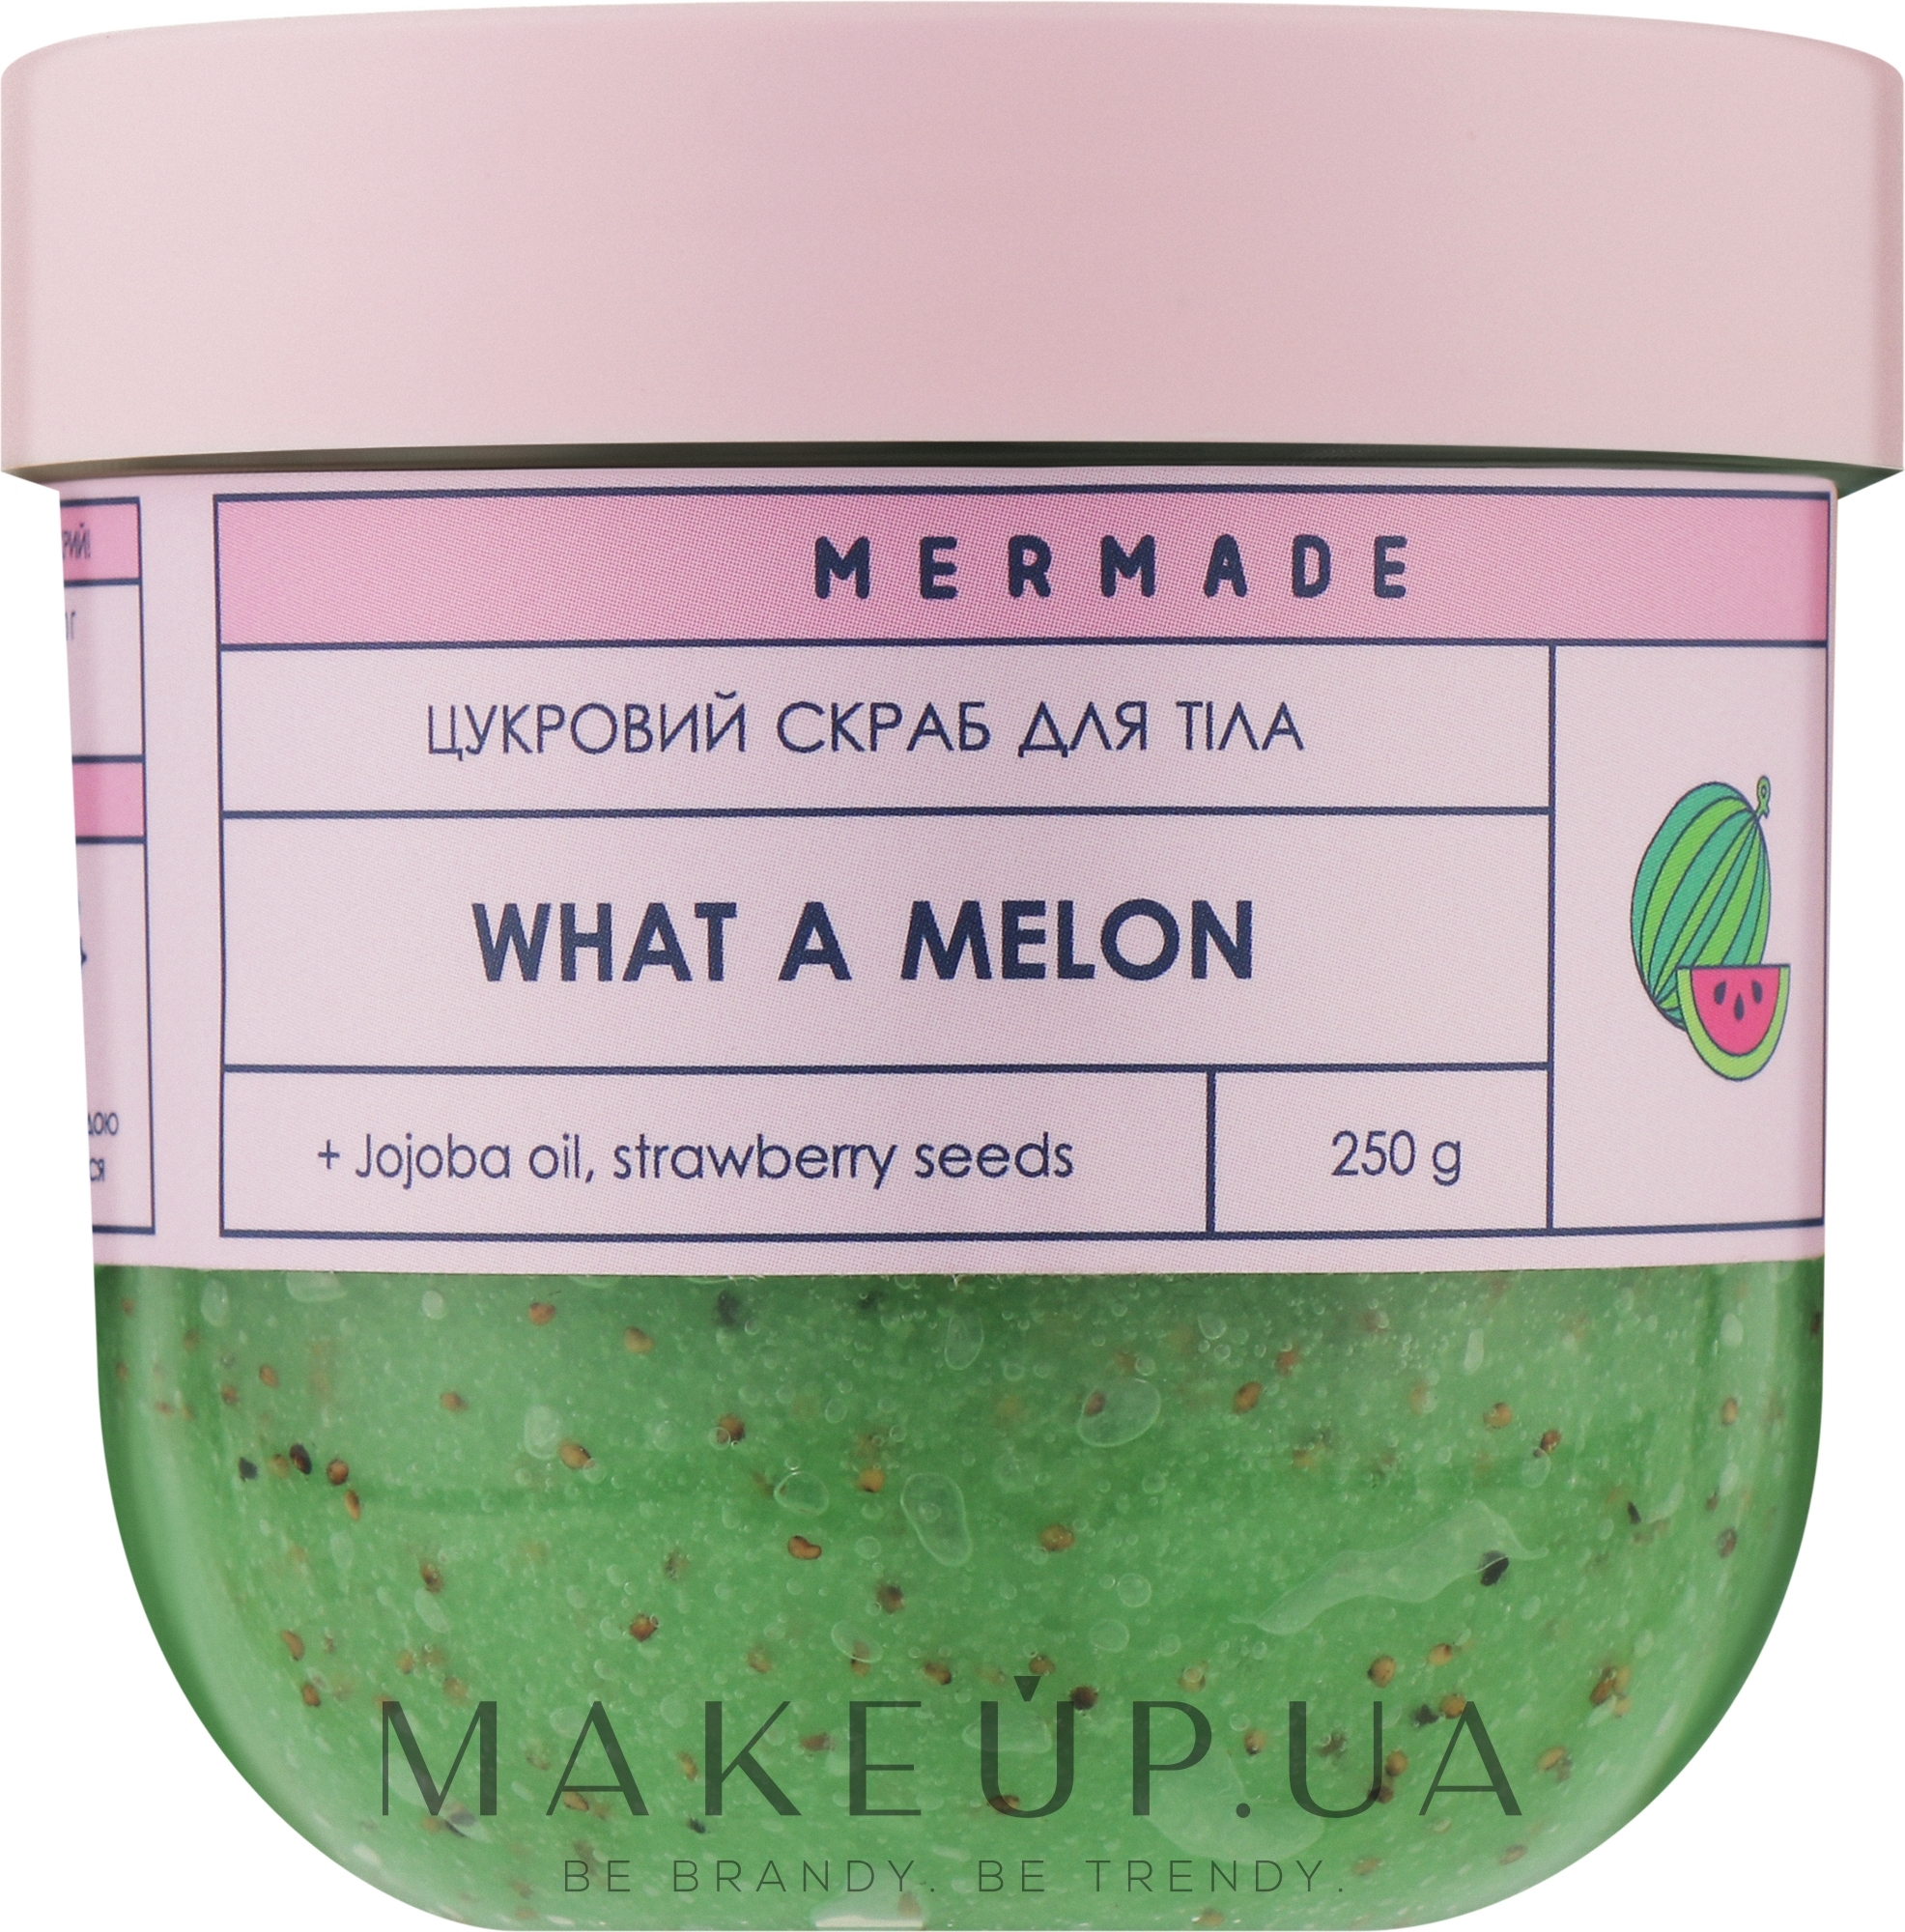 Цукровий скраб для тіла - Mermade What A Melon — фото 250g